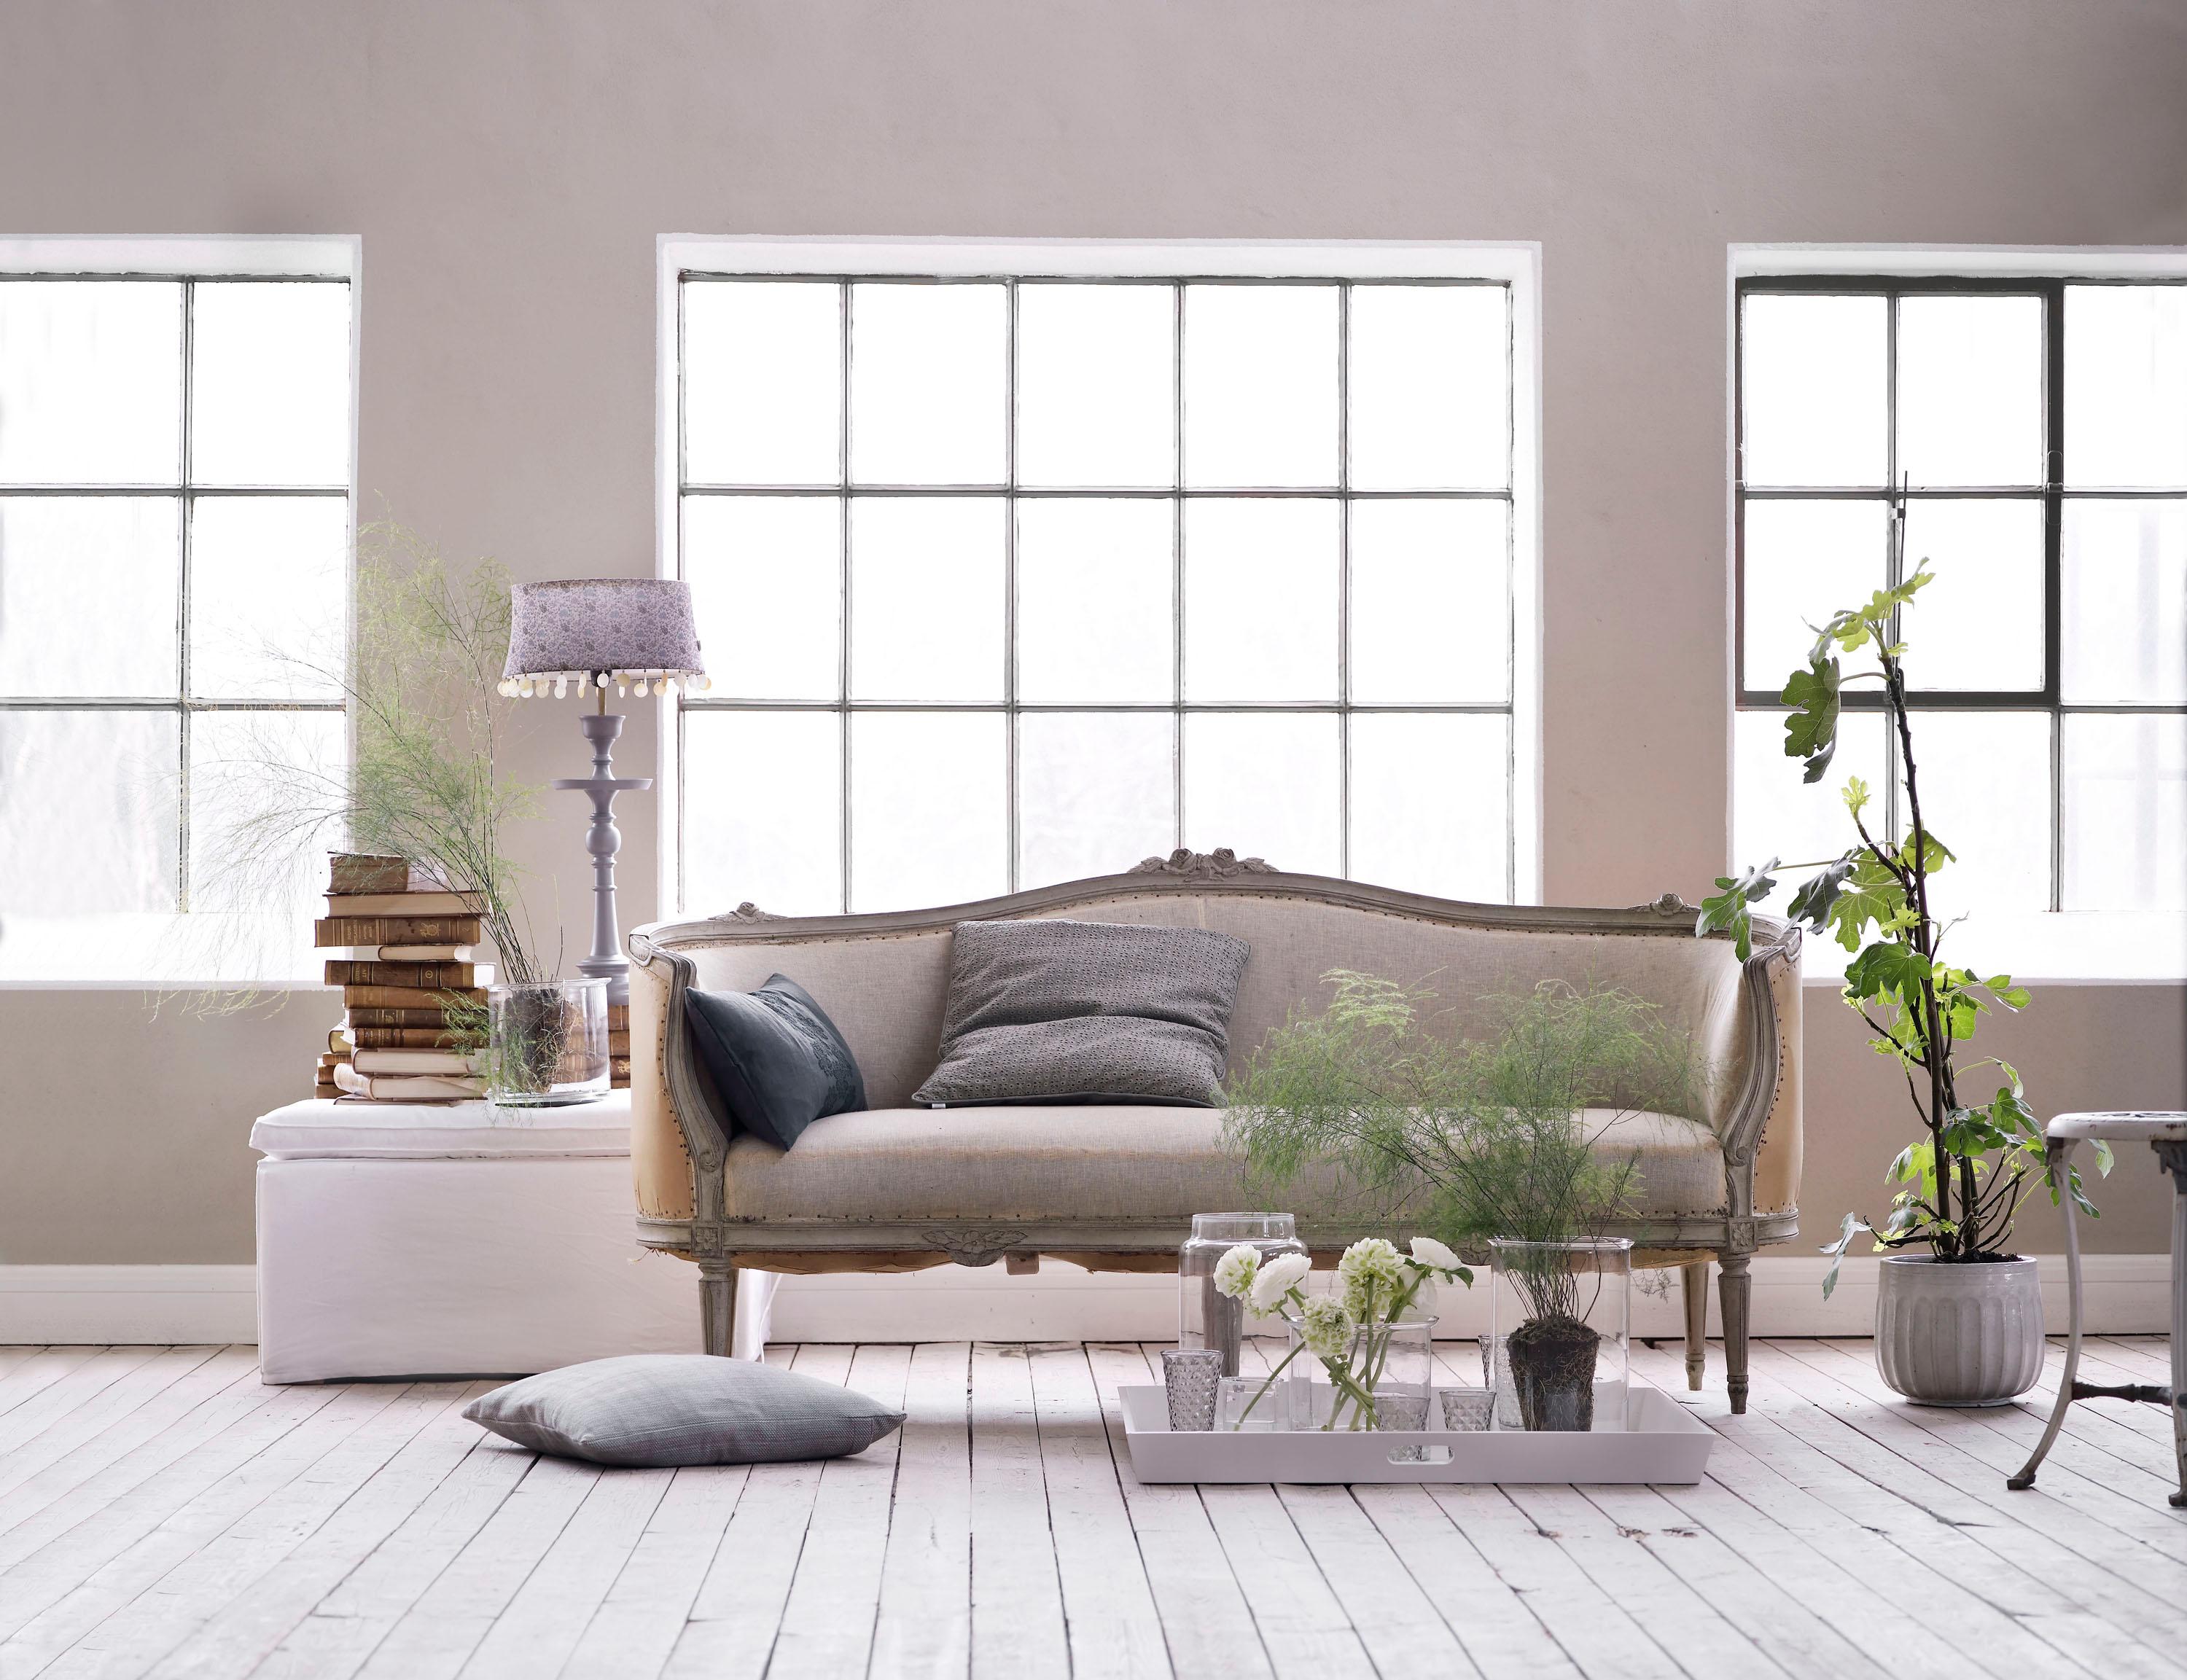 Romantische Einrichtung mit Zimmerpflanzen #zimmerpflanze #barockmöbel ©Tine K Home